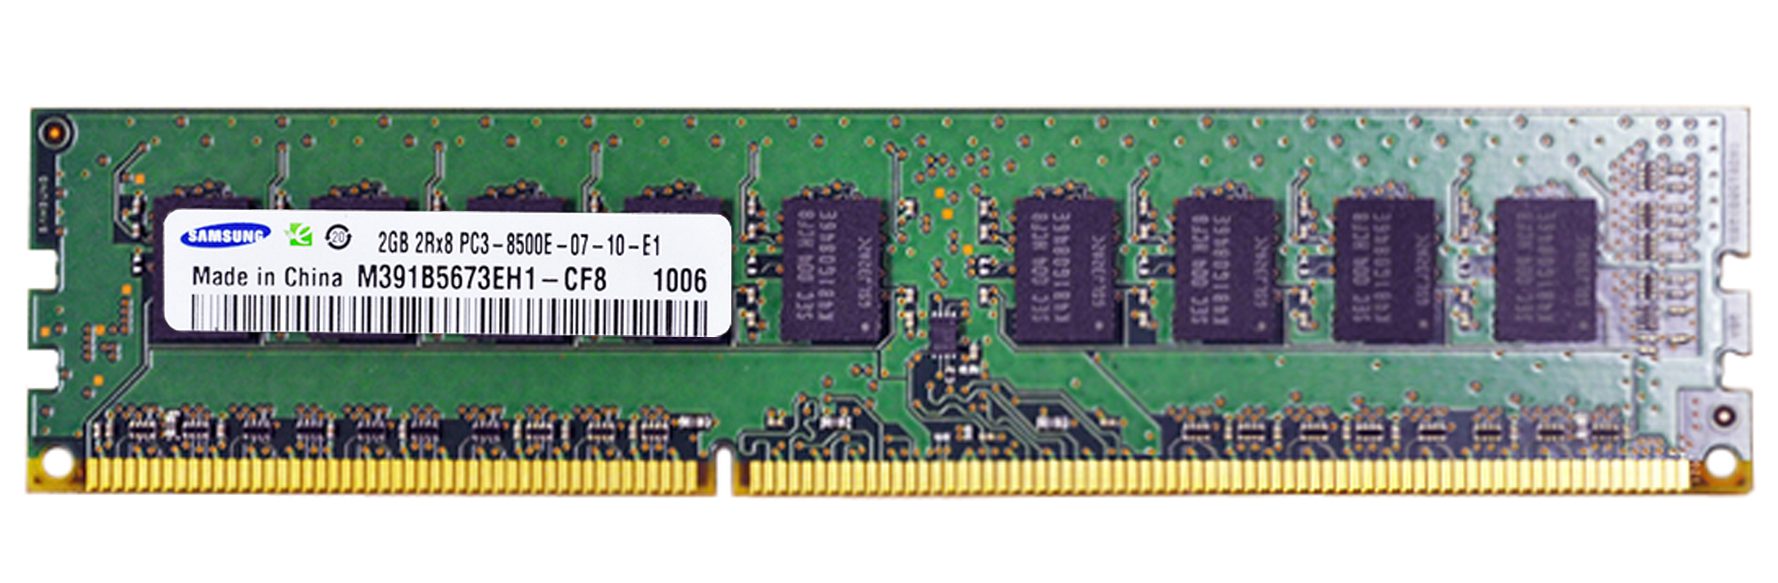 Samsung M391B5673EH1-CF8 PC3-8500E-07-10-E1 2GB Server Memory RAM